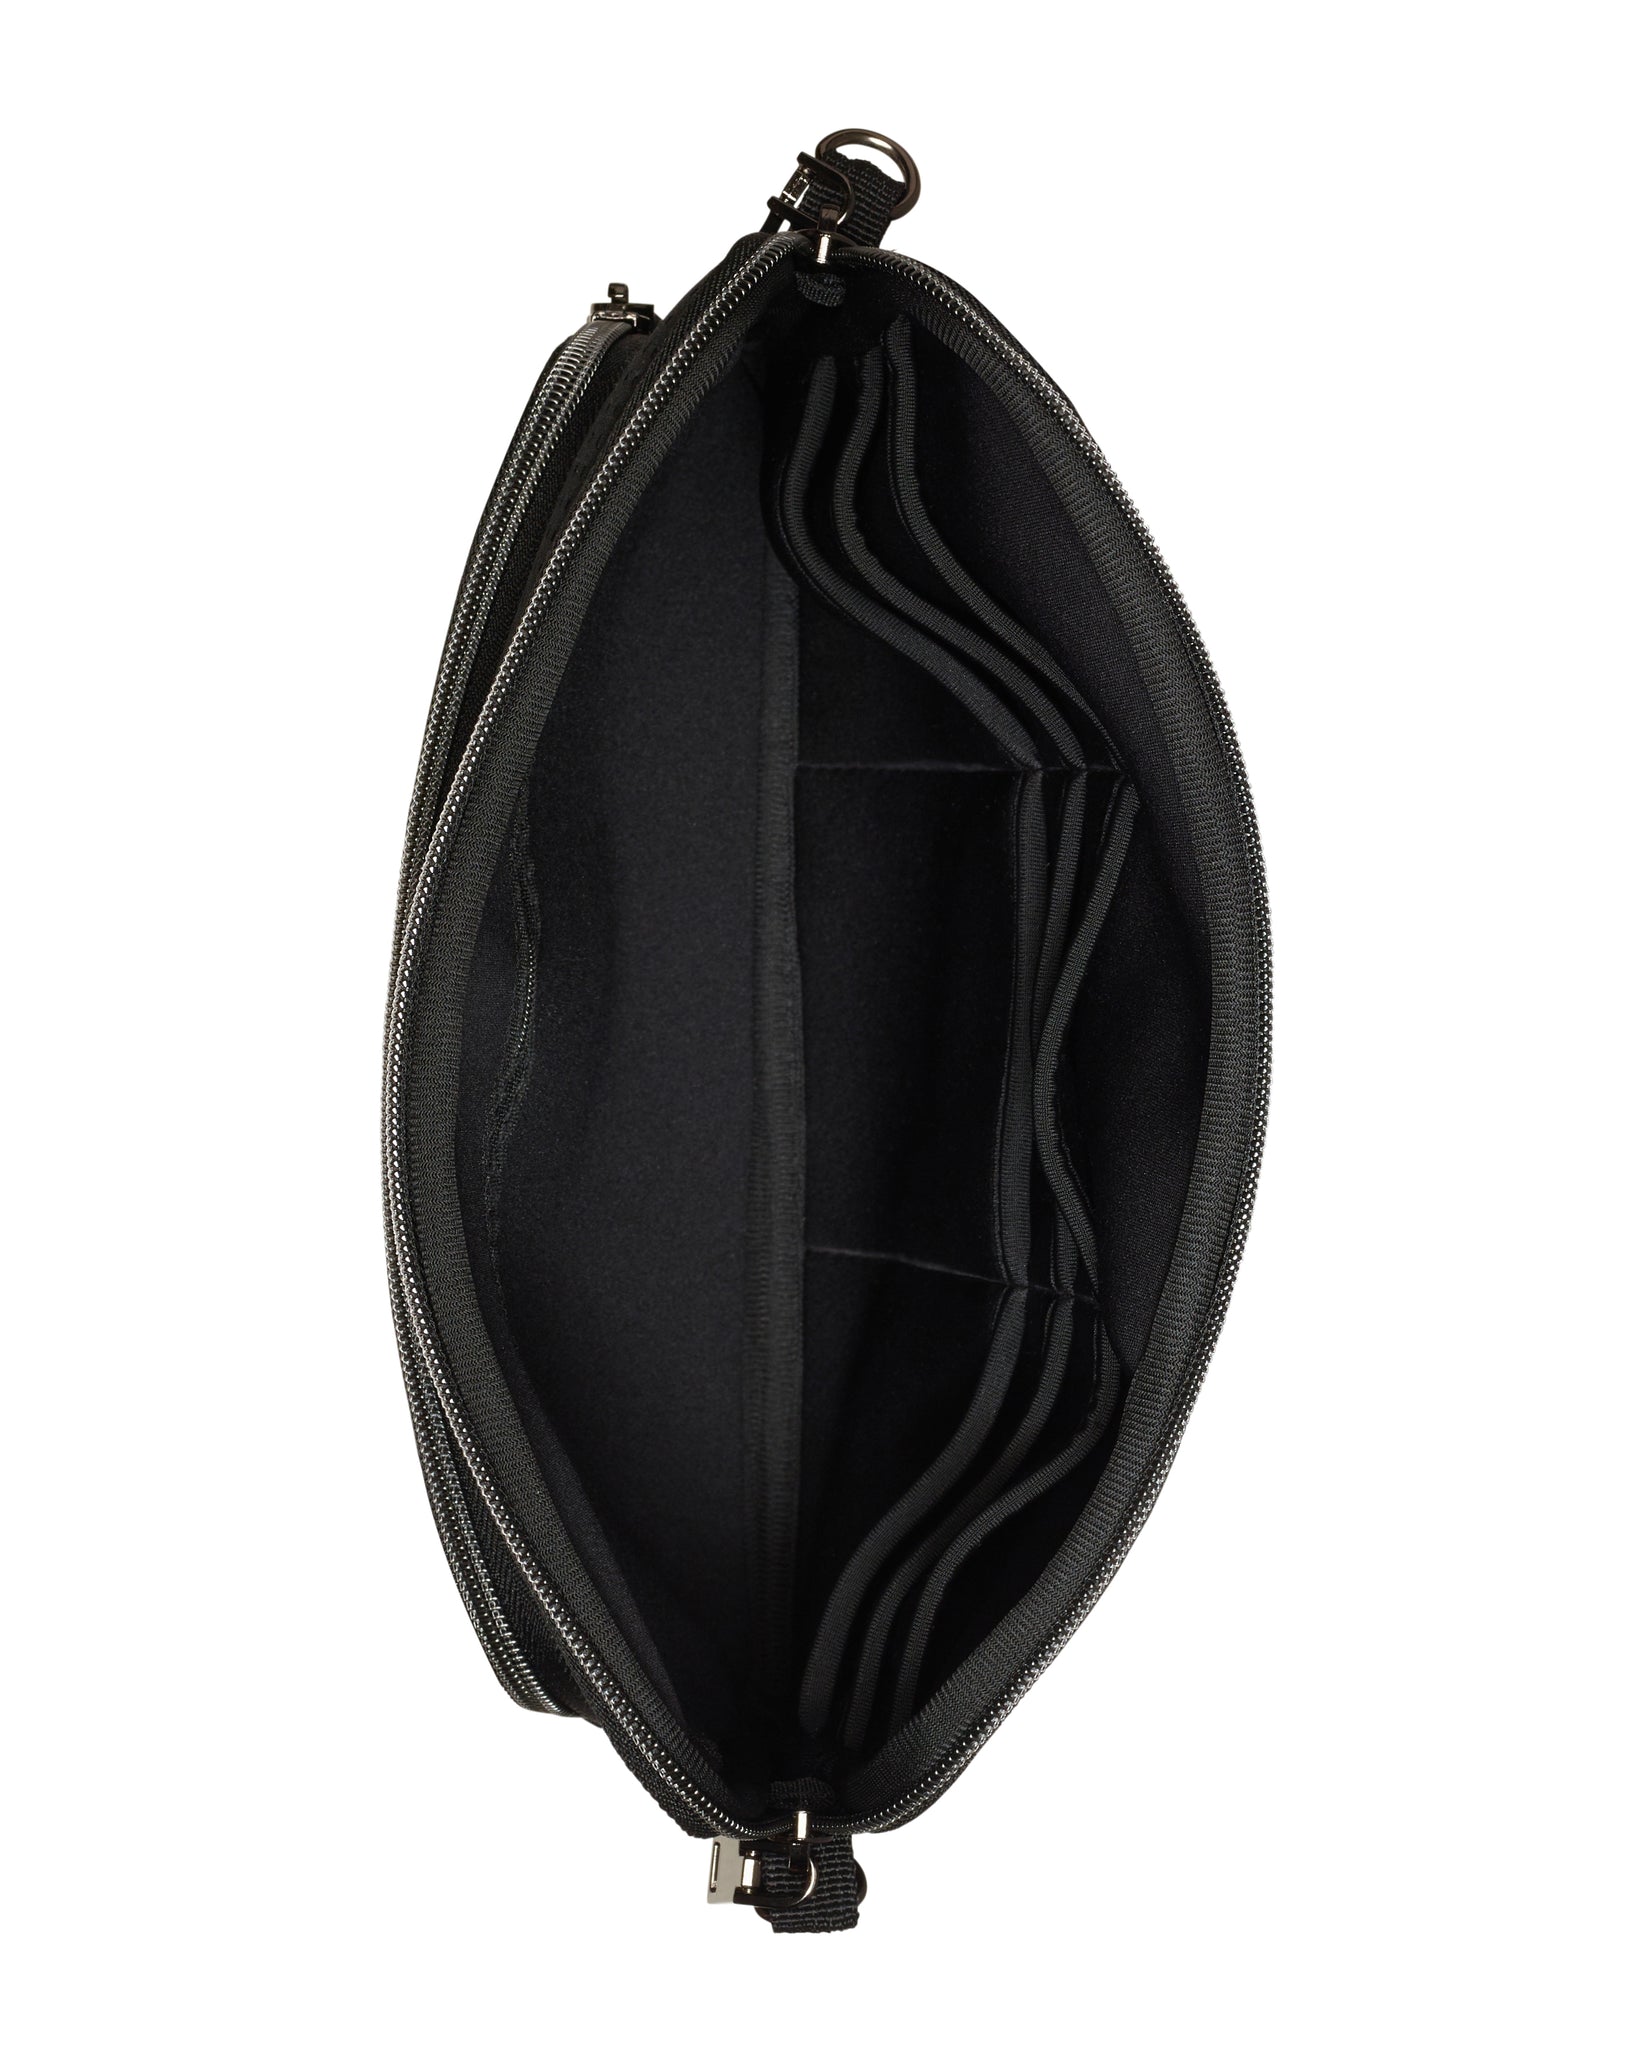 The Evie Bag (BLACK) Neoprene Crossbody Bag